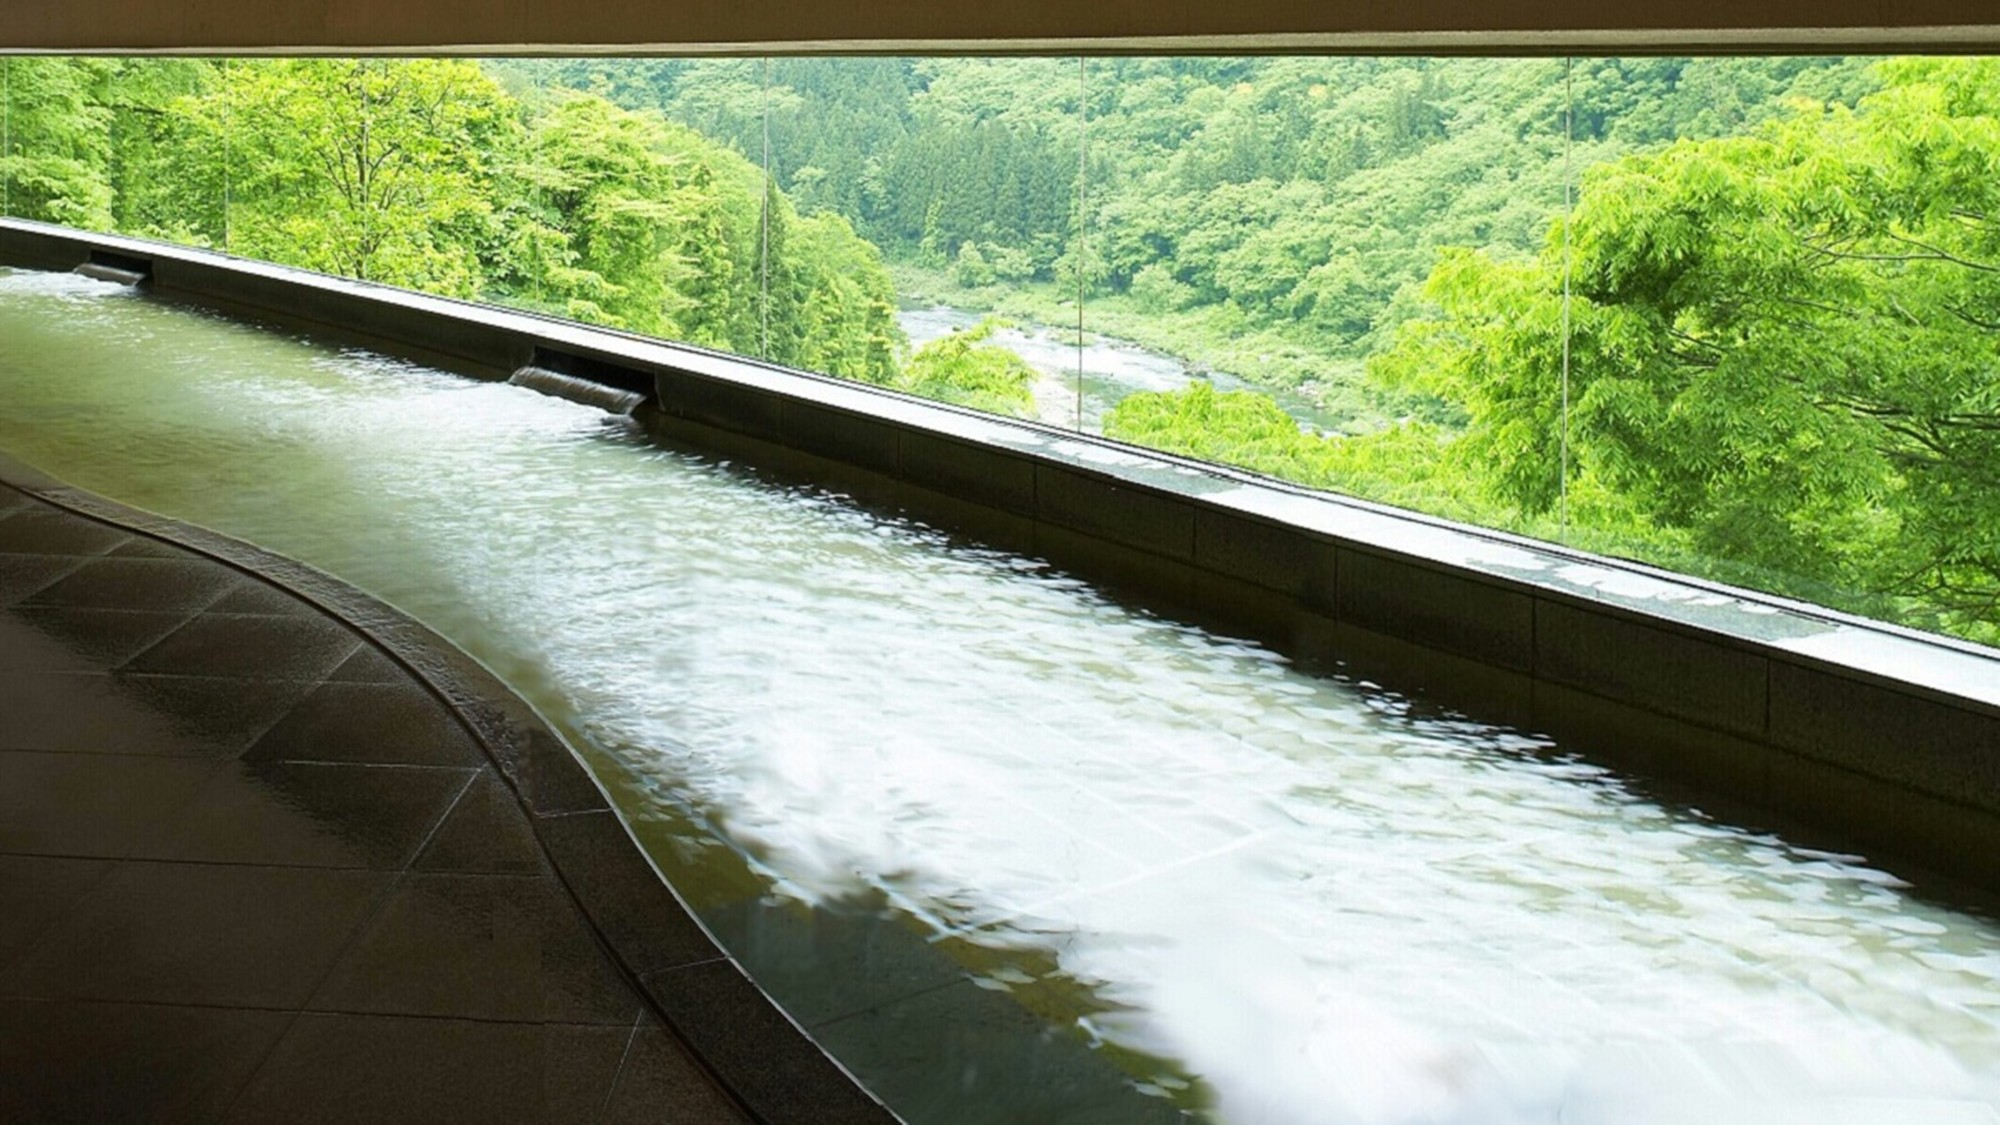 緑が美しい渓流展望風呂※本館が休館の場合はご利用いただけません。ご了承ください。